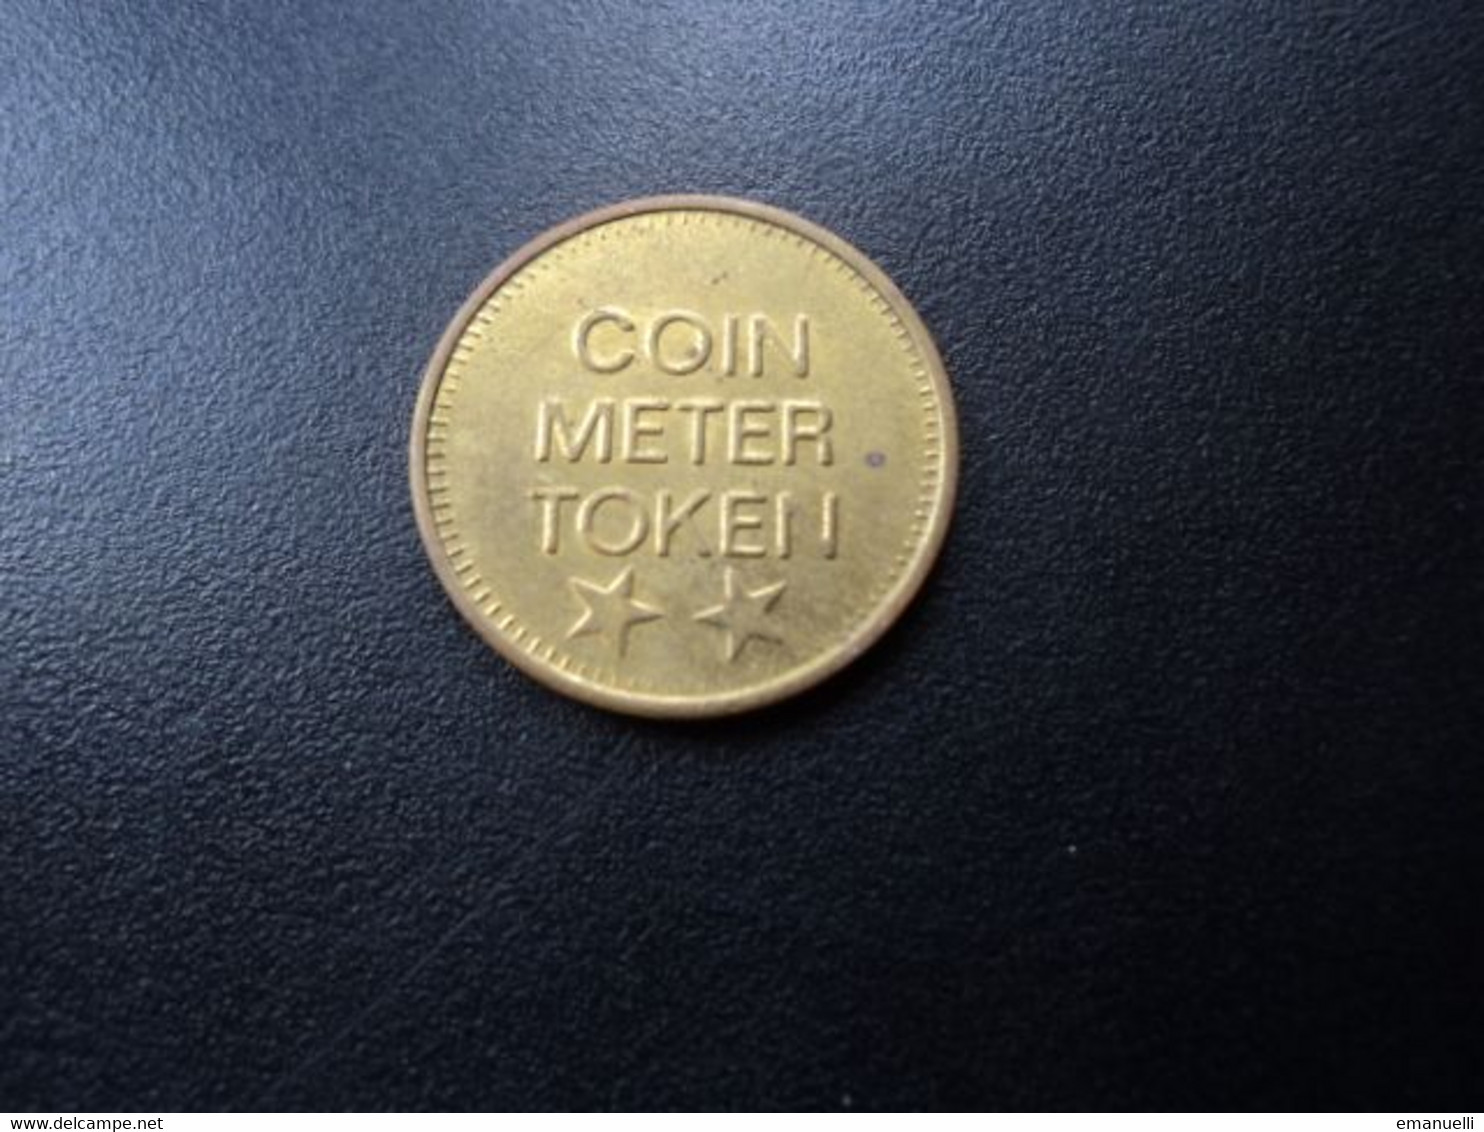 COIN METER TOKEN * - Monedas/ De Necesidad